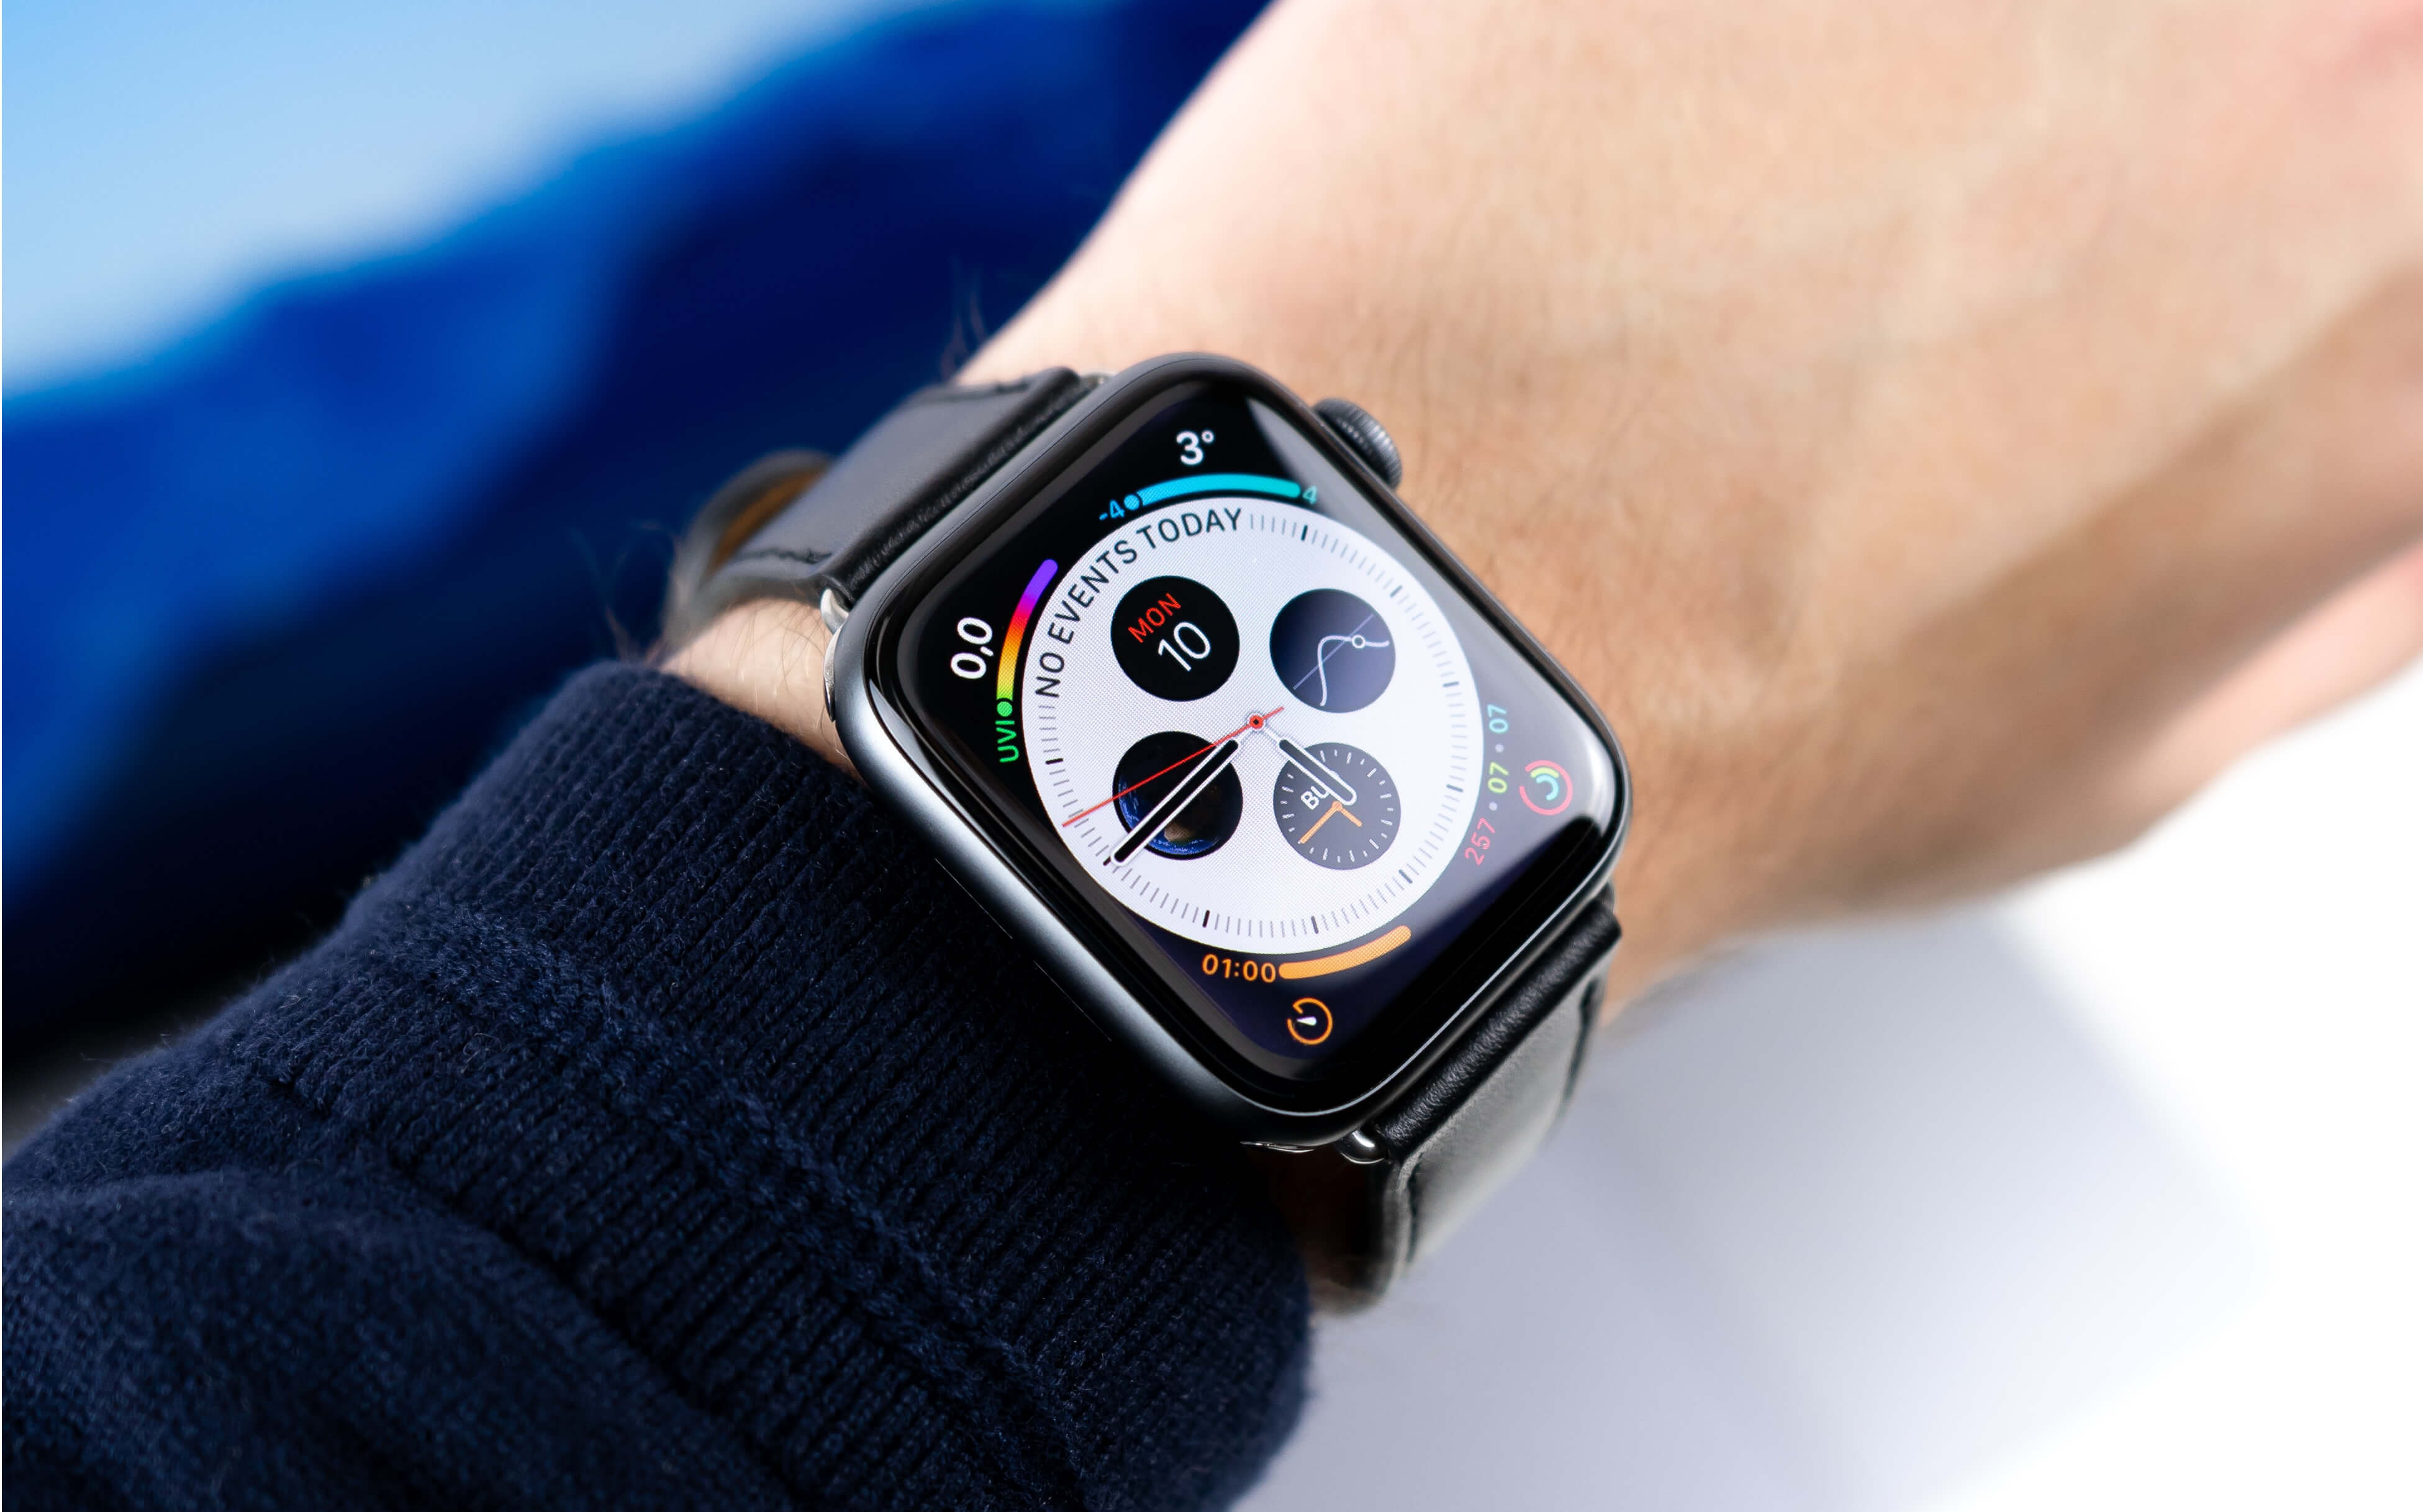 【2020年】Apple Watchでできること一覧【Series 6の新機能まで対応】 | Apple technica